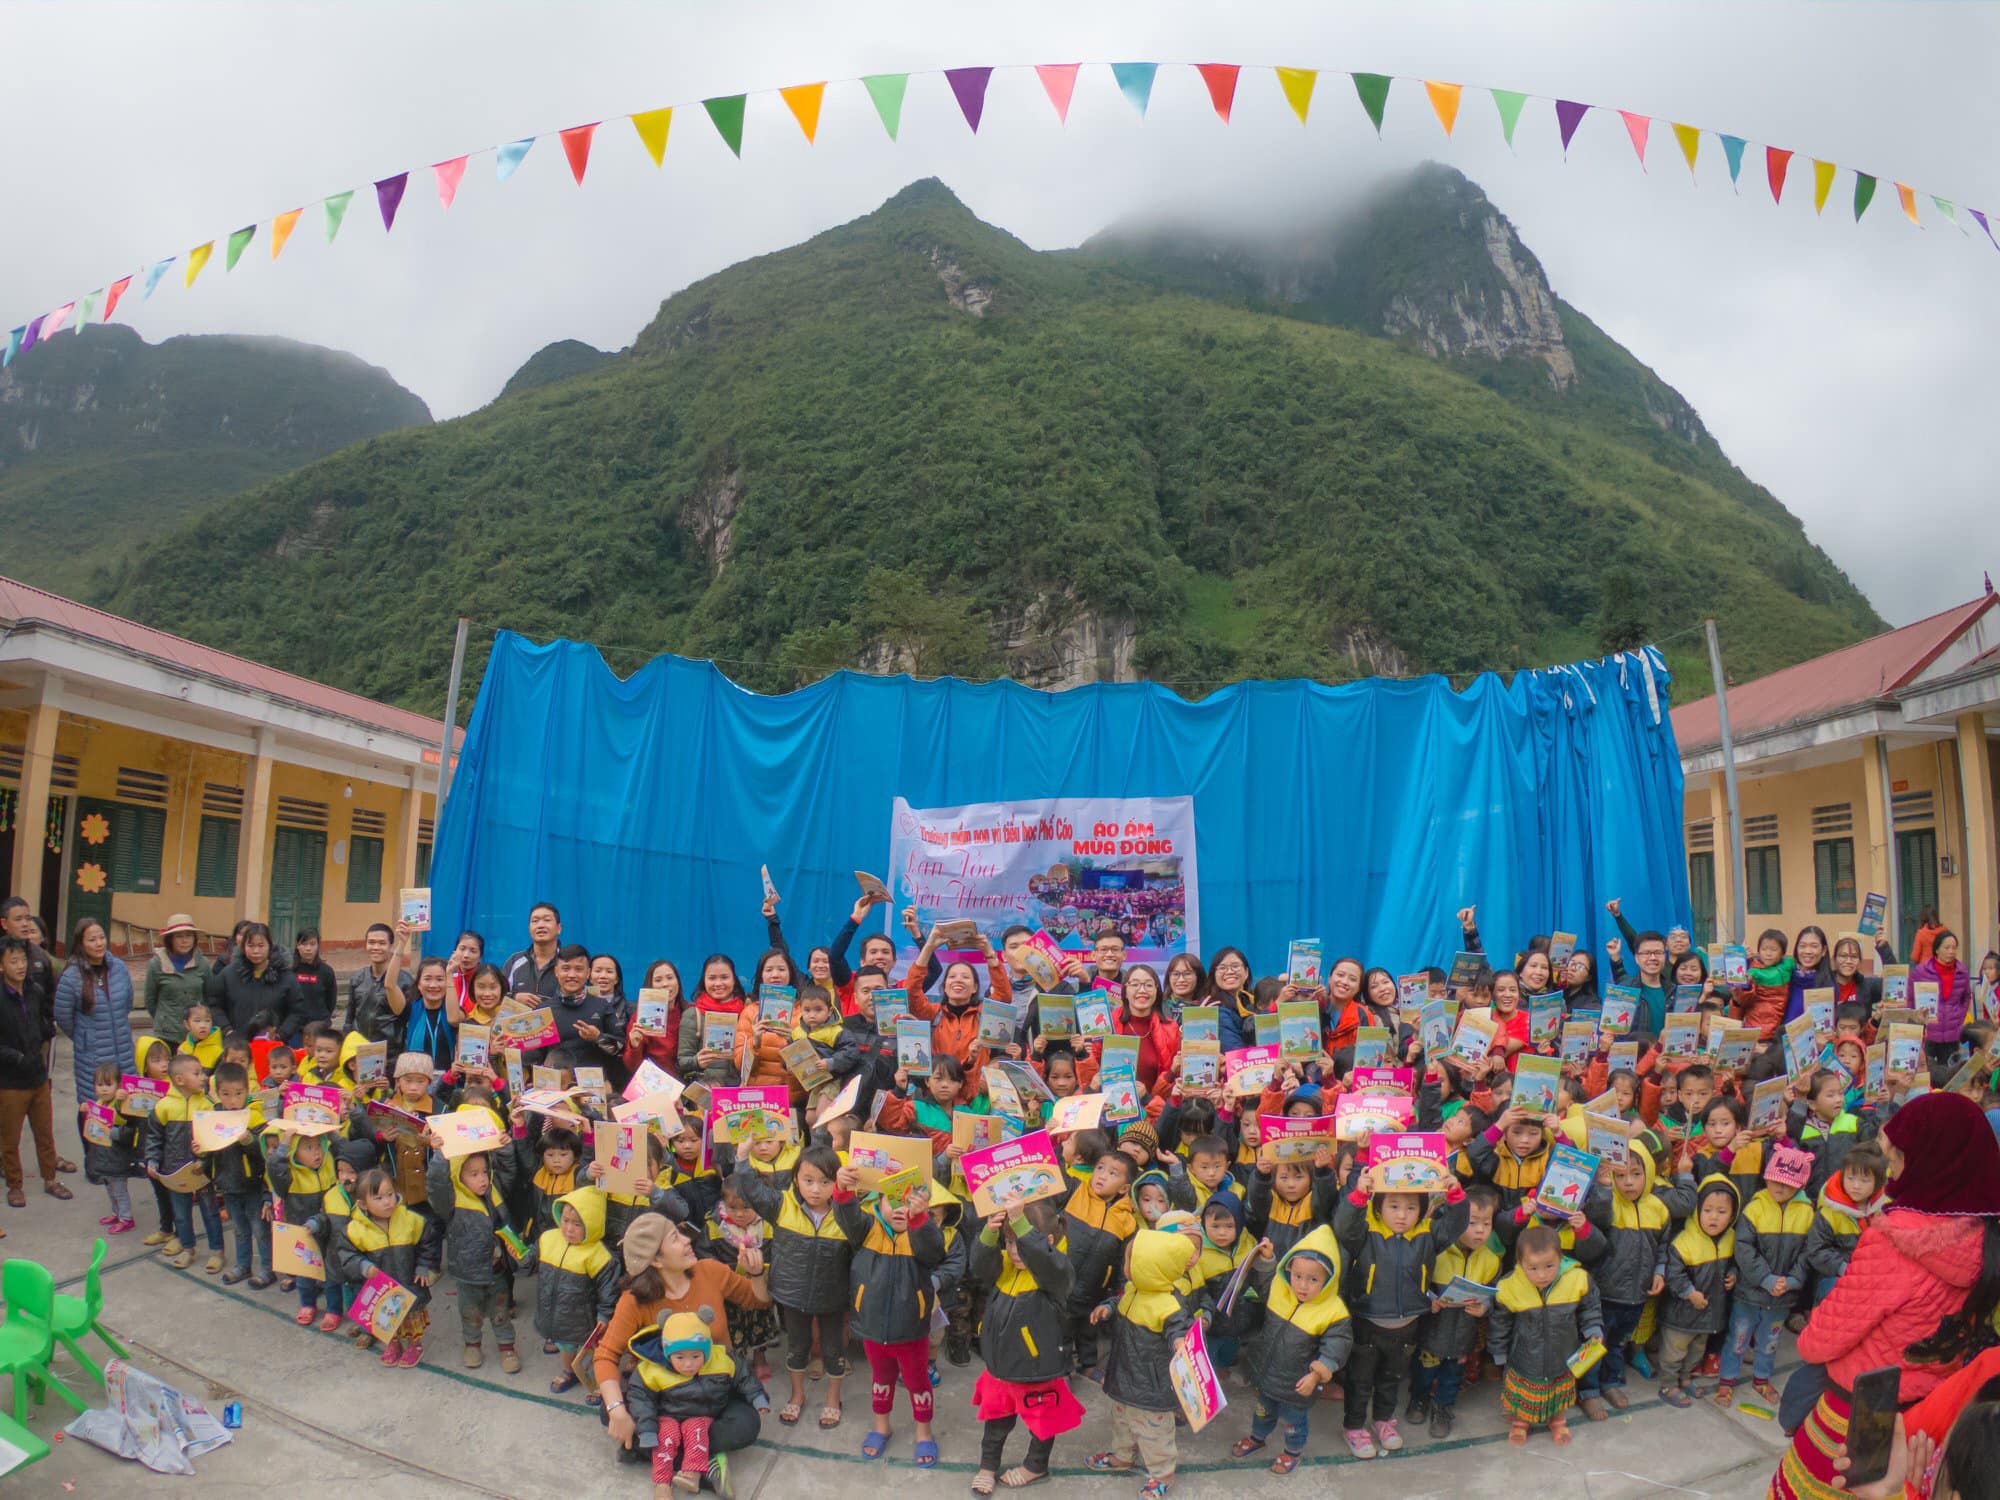 Các thành viên của GNH Vũng Tàu tặng áo ấm cho các em nhỏ miền núi trong chương trình “Áo ấm Hà Giang”. Ảnh: GNH VŨNG TÀU